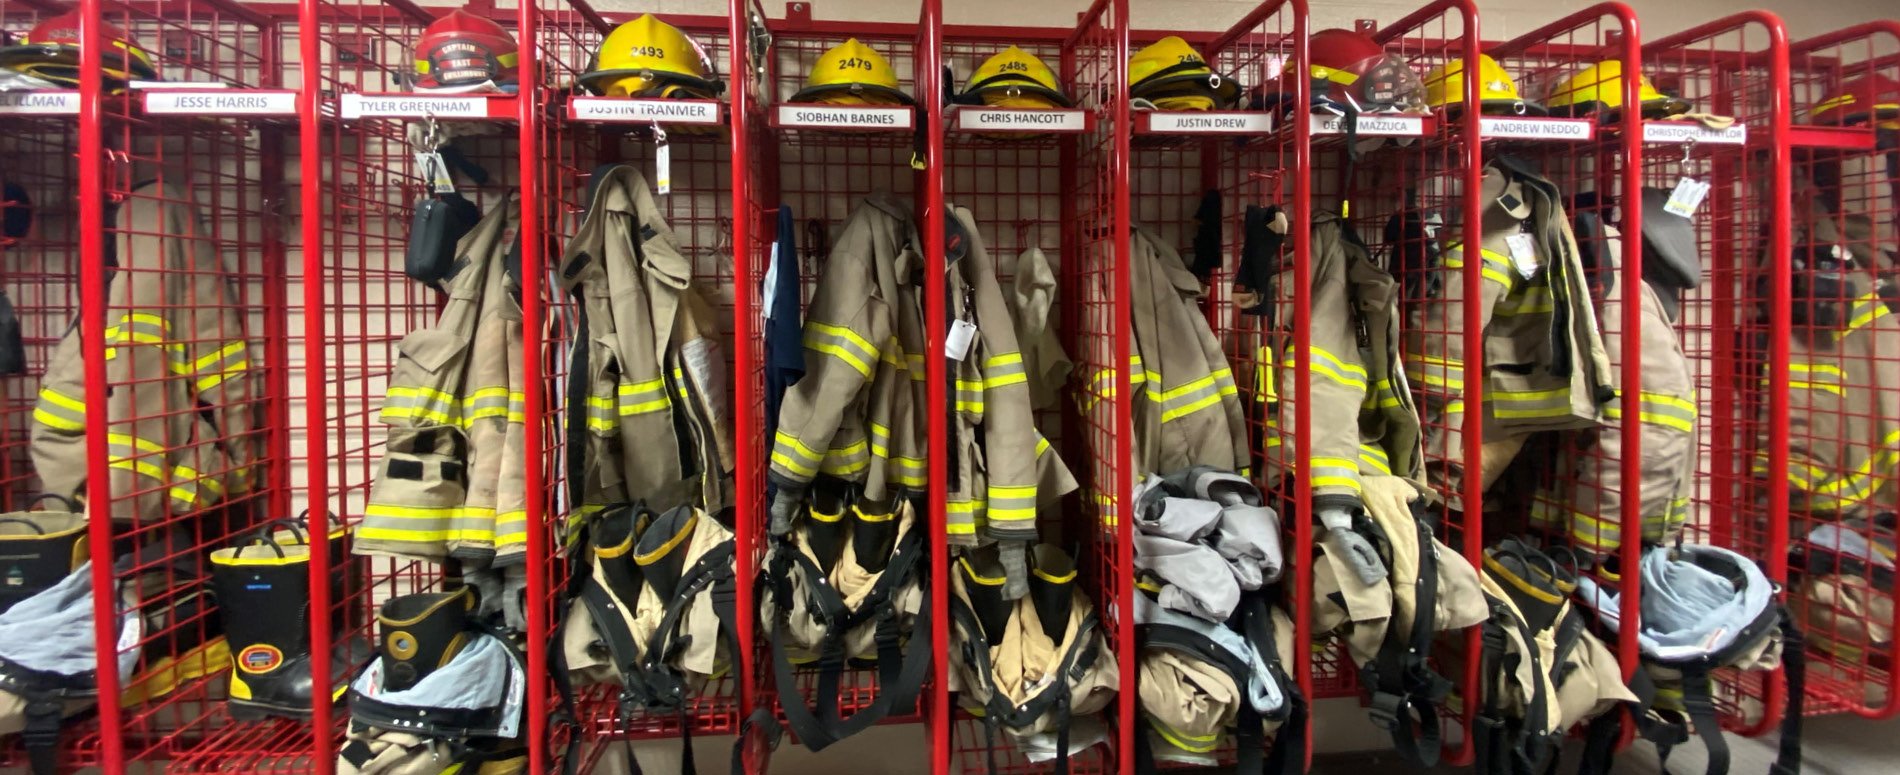 Fire gear on racks